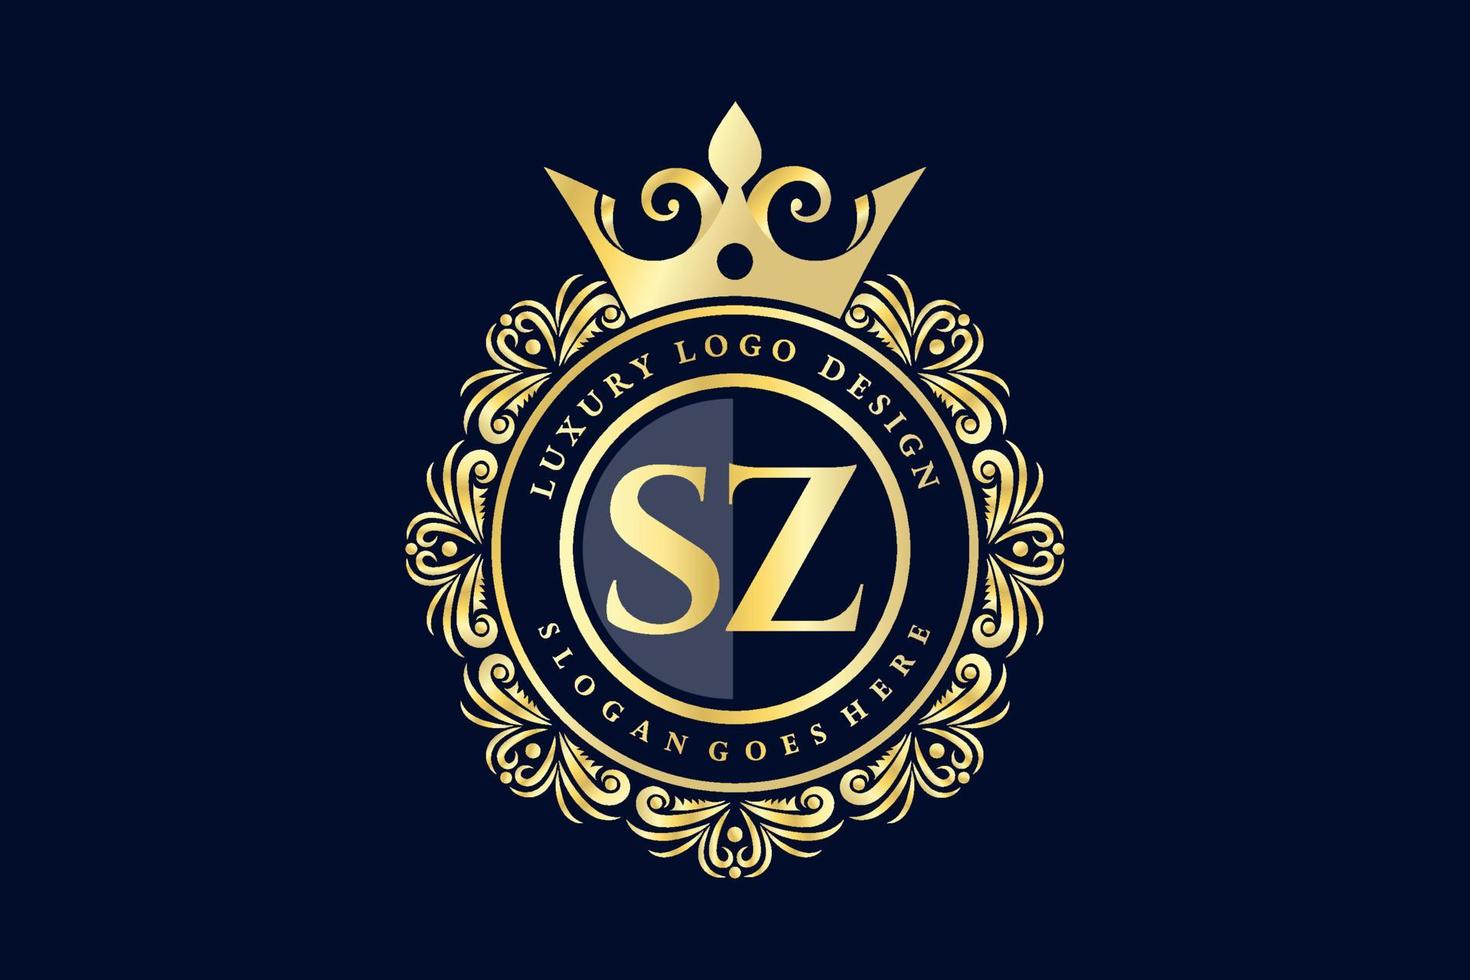 sz Anfangsbuchstabe Gold kalligraphisch feminin floral handgezeichnet heraldisches Monogramm Antik-Vintage-Stil Luxus-Logo-Design Premium-Vektor vektor